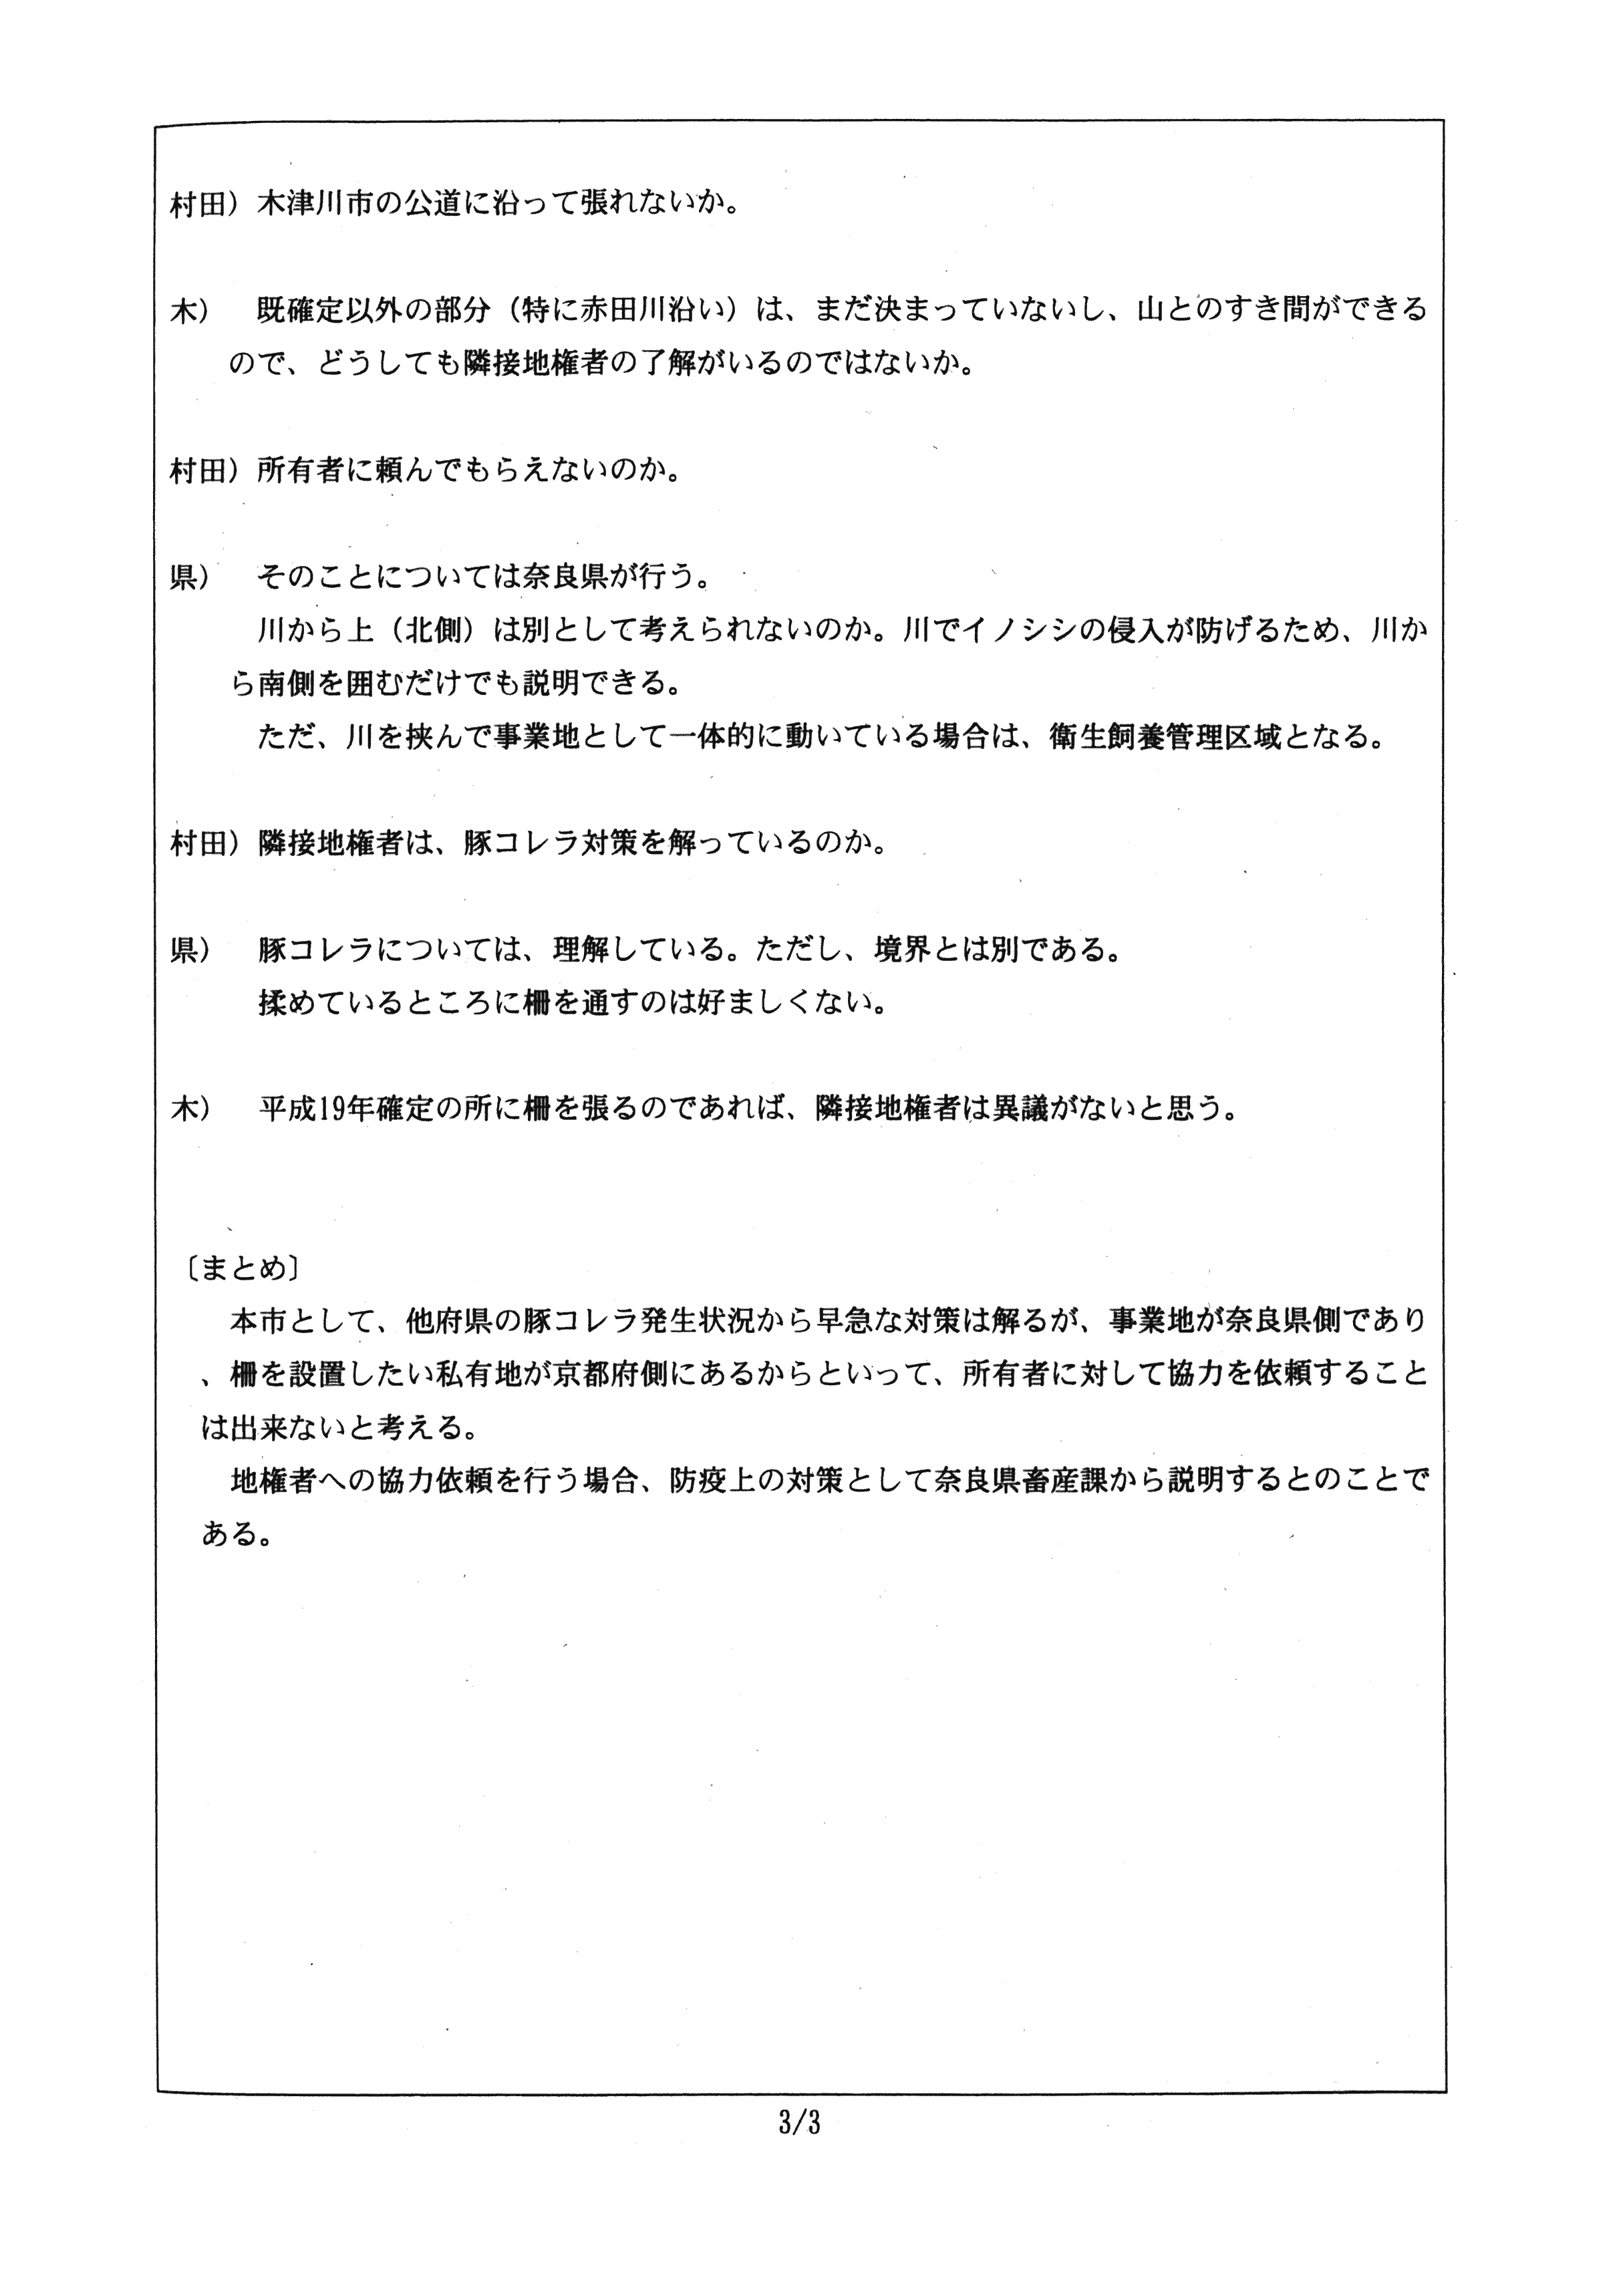 令和2年1月7日付連絡処理報告-村田商店に係る柵による衛星管理区域の囲い込みについて（協議）-03